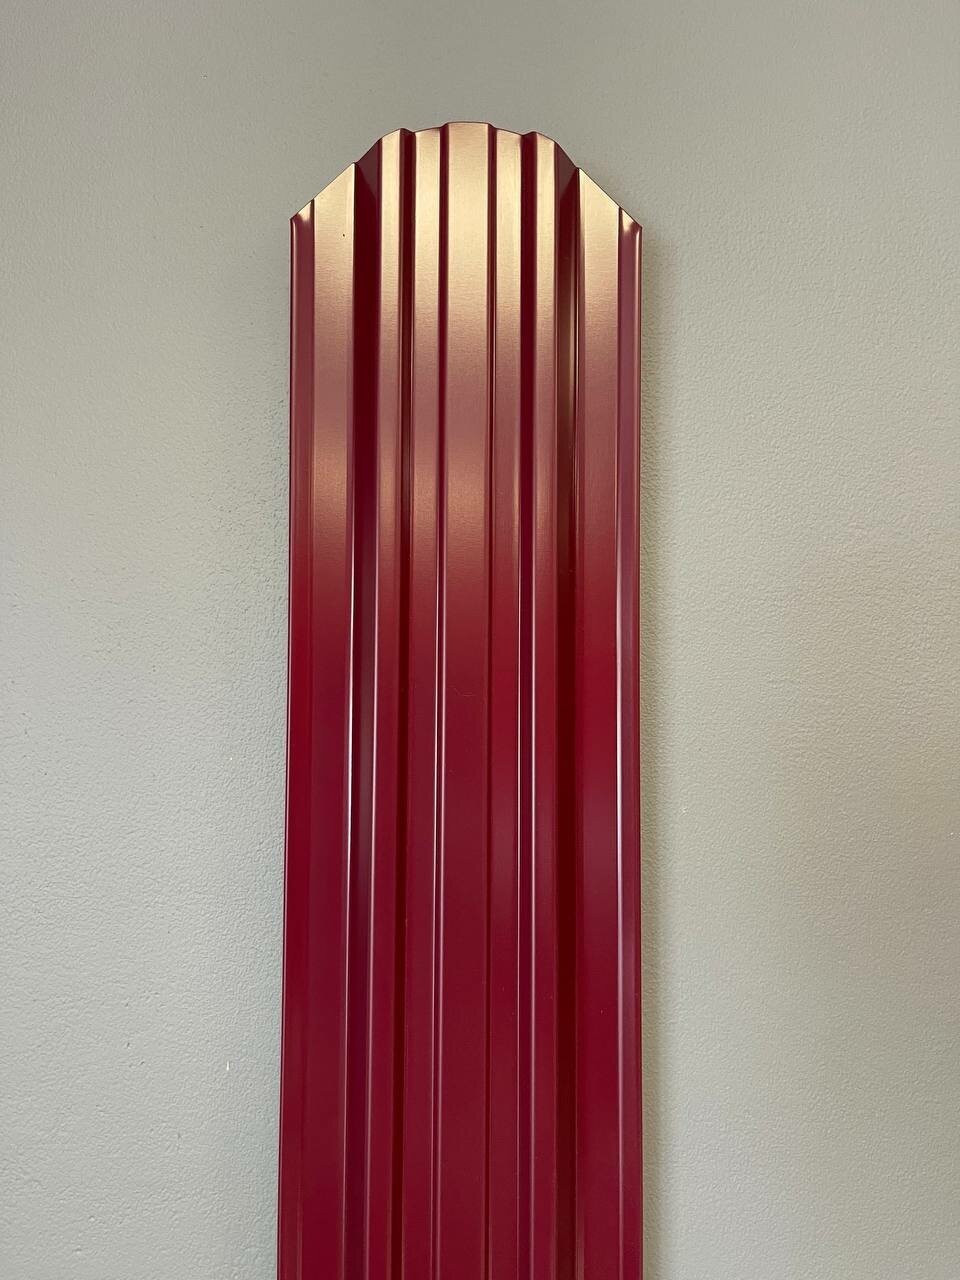 Штакетник металлический Премиум (евроштакетник) двухсторонний окрас, цвет винно-красный RAL 3005, высота 1.80 м, ширина планки 118мм - 10 шт